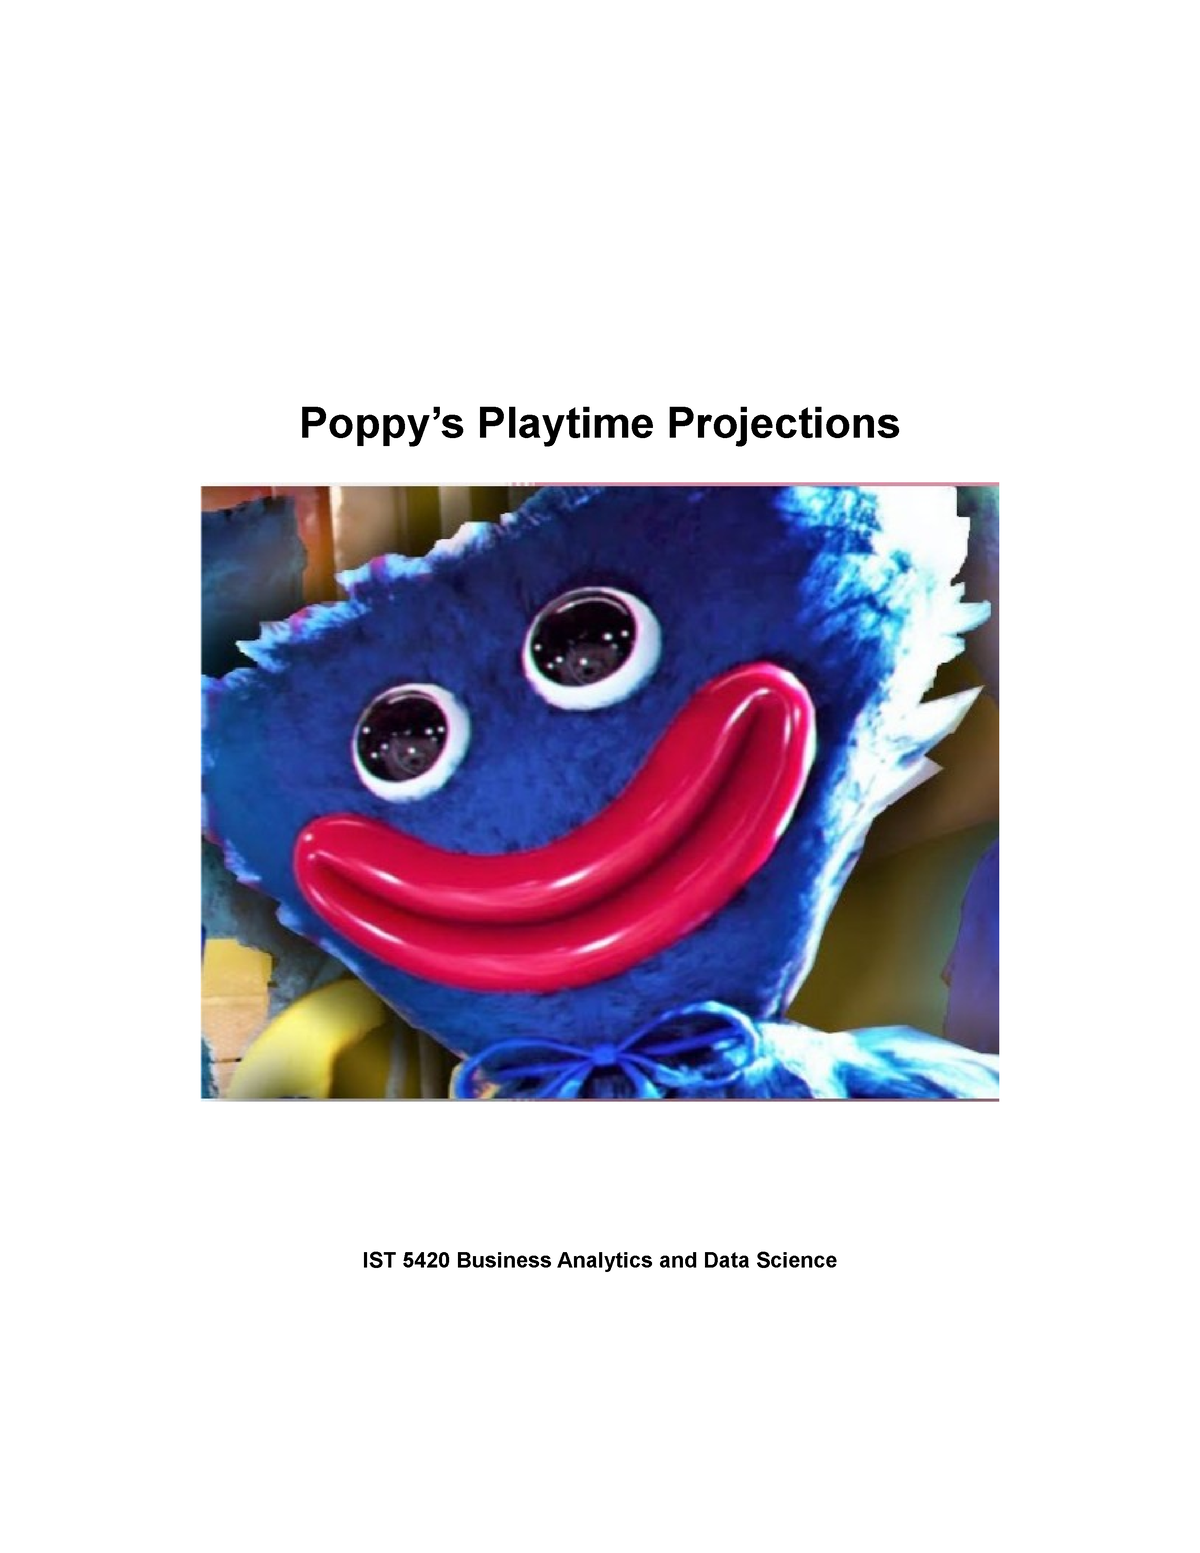 Poppy Playtime Horror Guide App Trends 2023 Poppy Playtime Horror